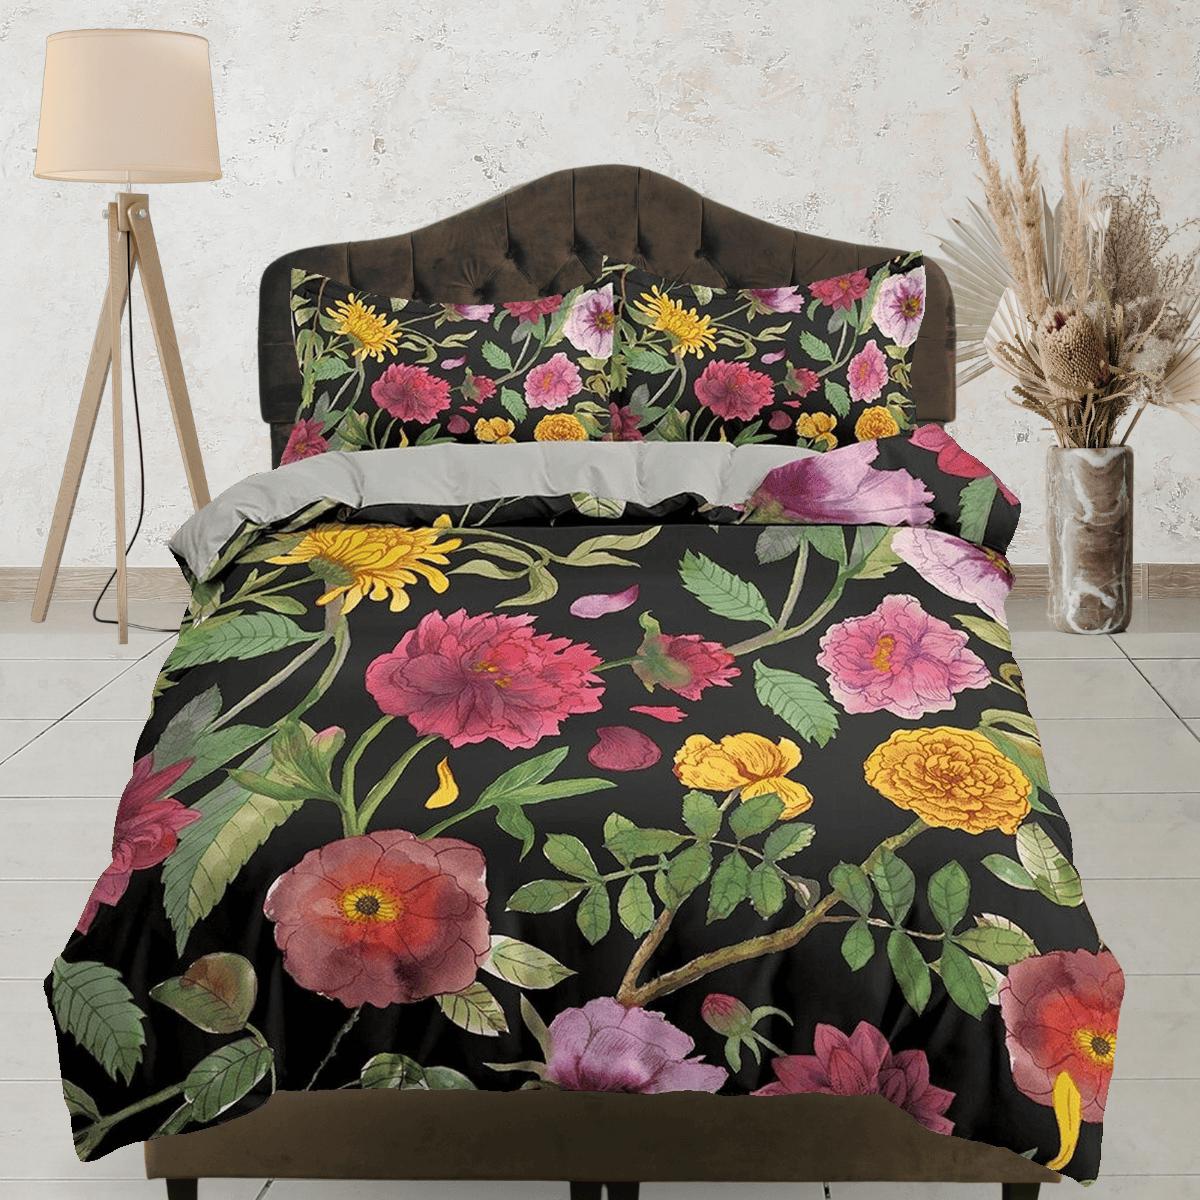 daintyduvet Shabby chic biophilic bedding, floral printed duvet cover queen, king, boho duvet, designer bedding, aesthetic bedding, maximalist decor